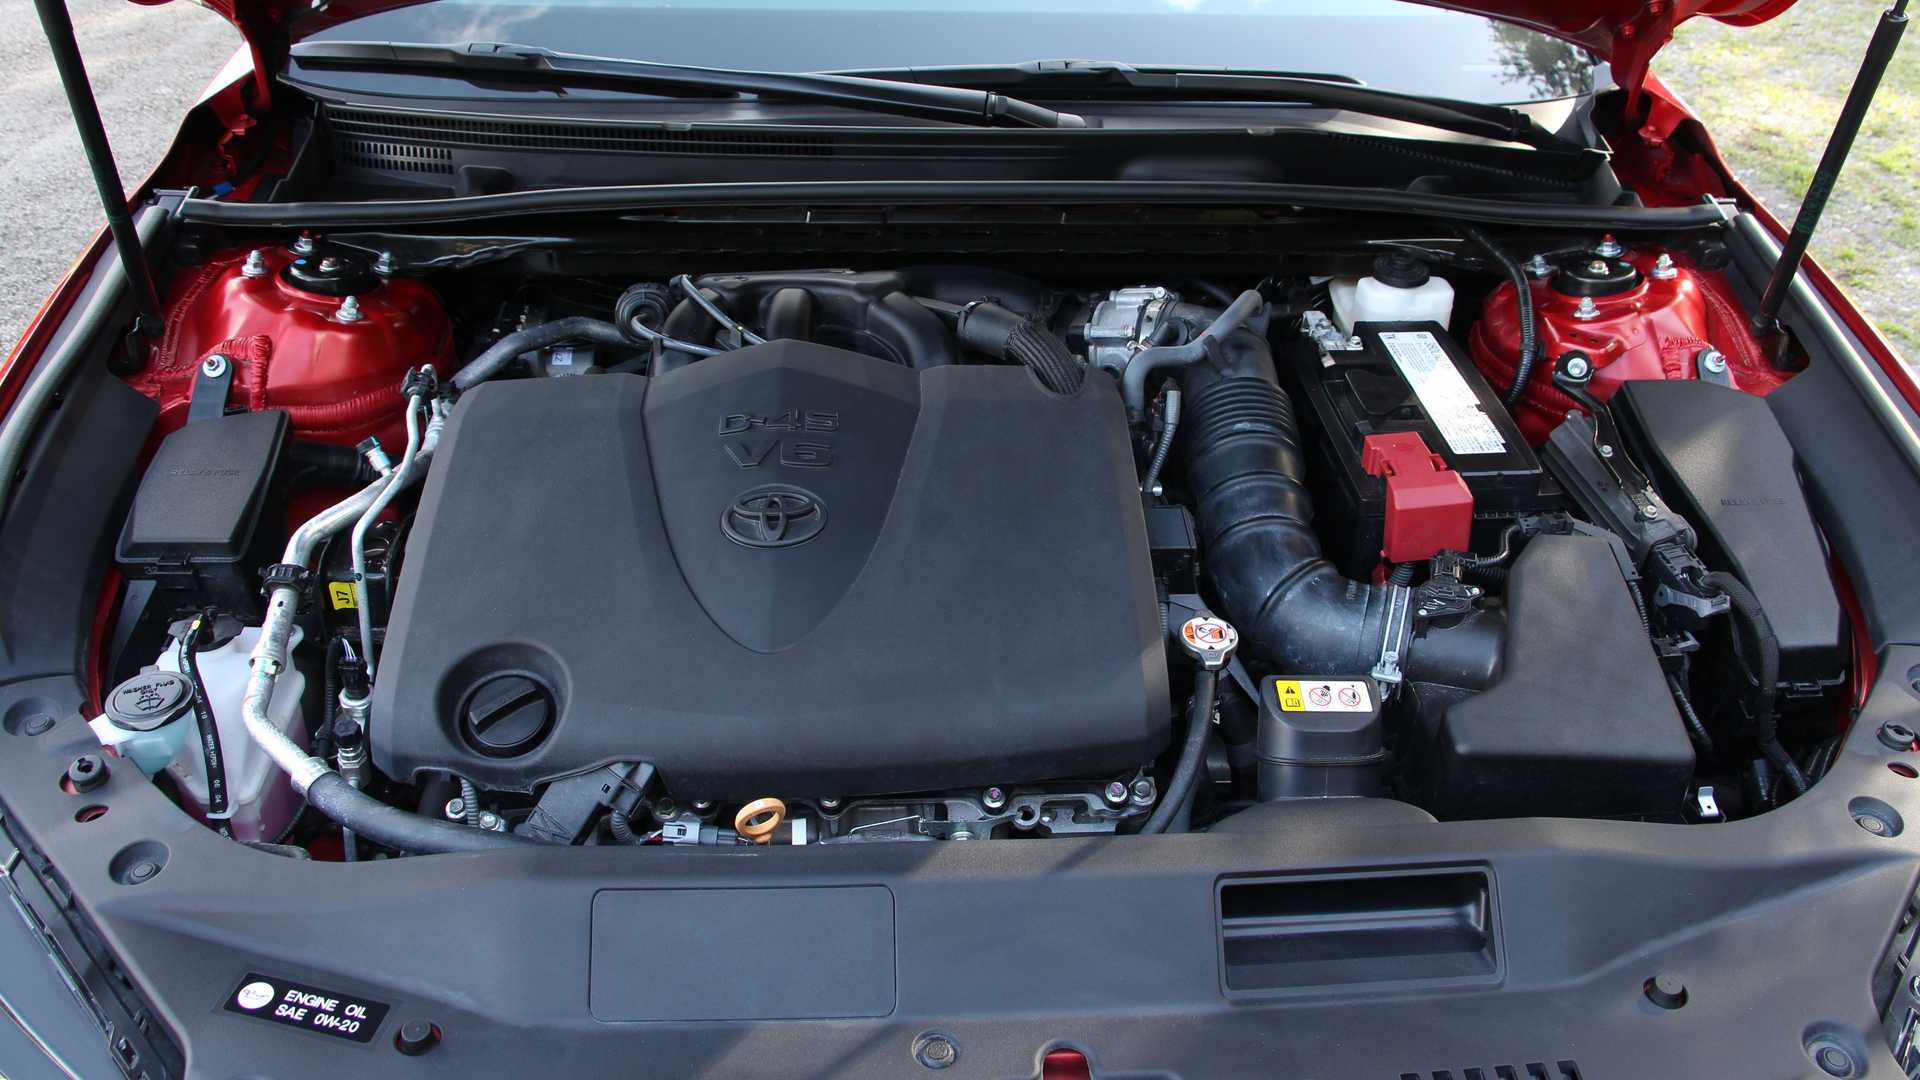 5升v6发动机可产生305马力的功率和362牛·米的扭矩,传动匹配的 是8at